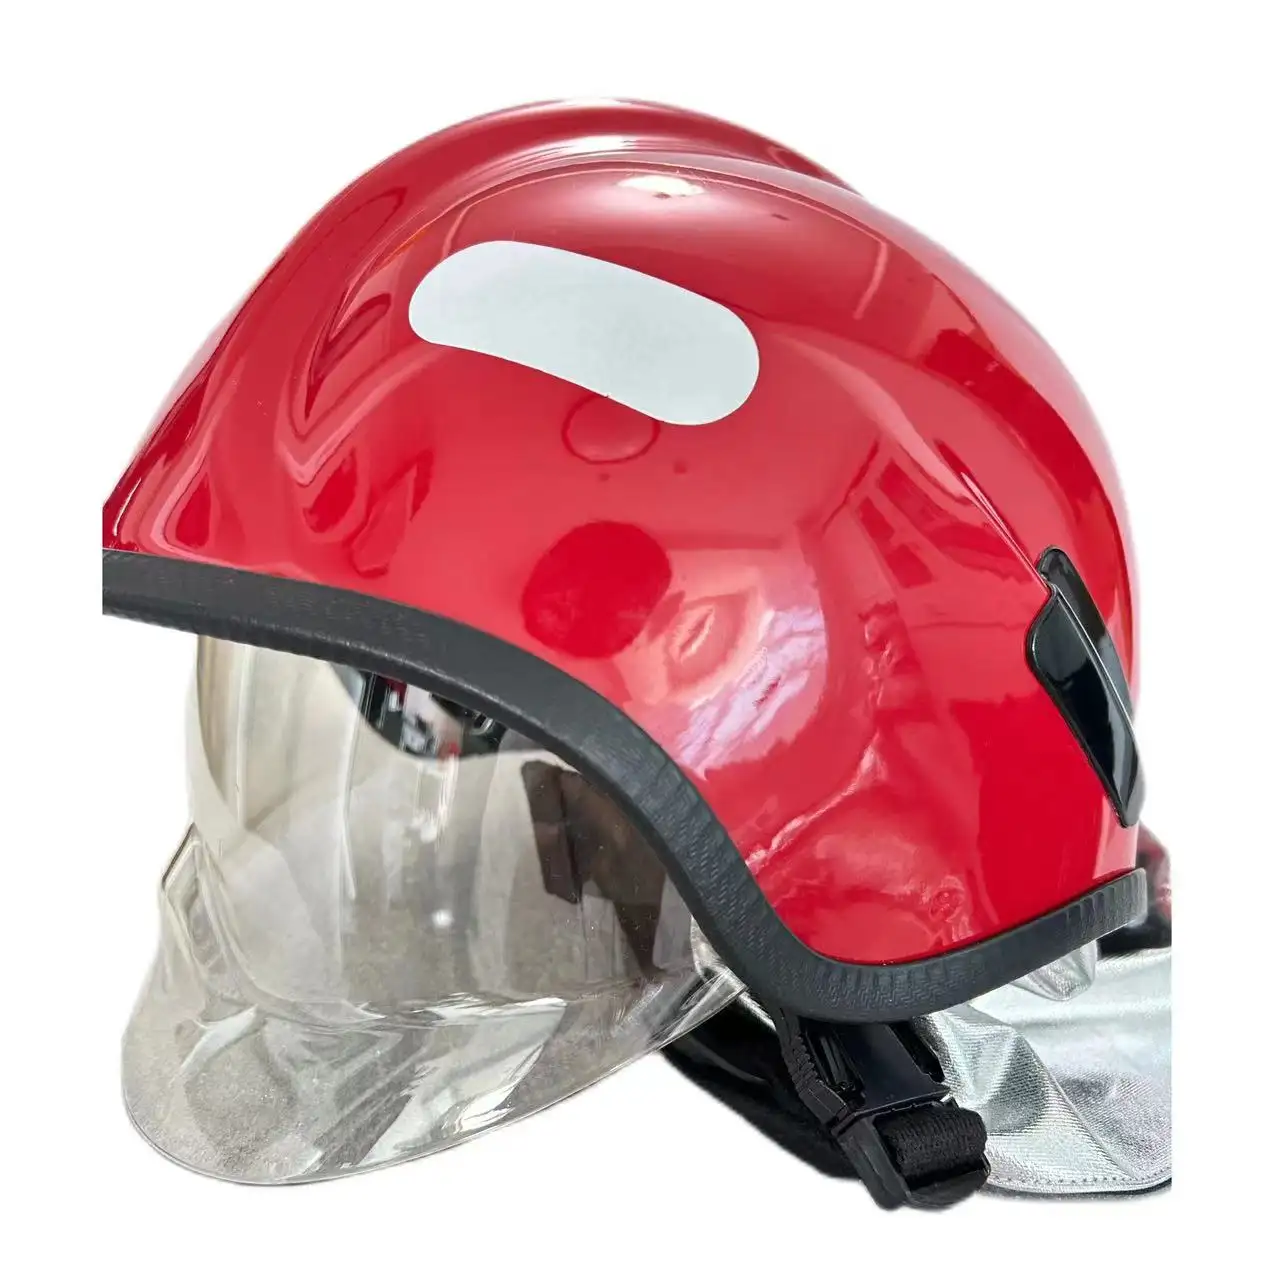 AS 중국 일류 소방 헬멧 하드 표면 클리어 뷰 착탈식 방화 헬멧